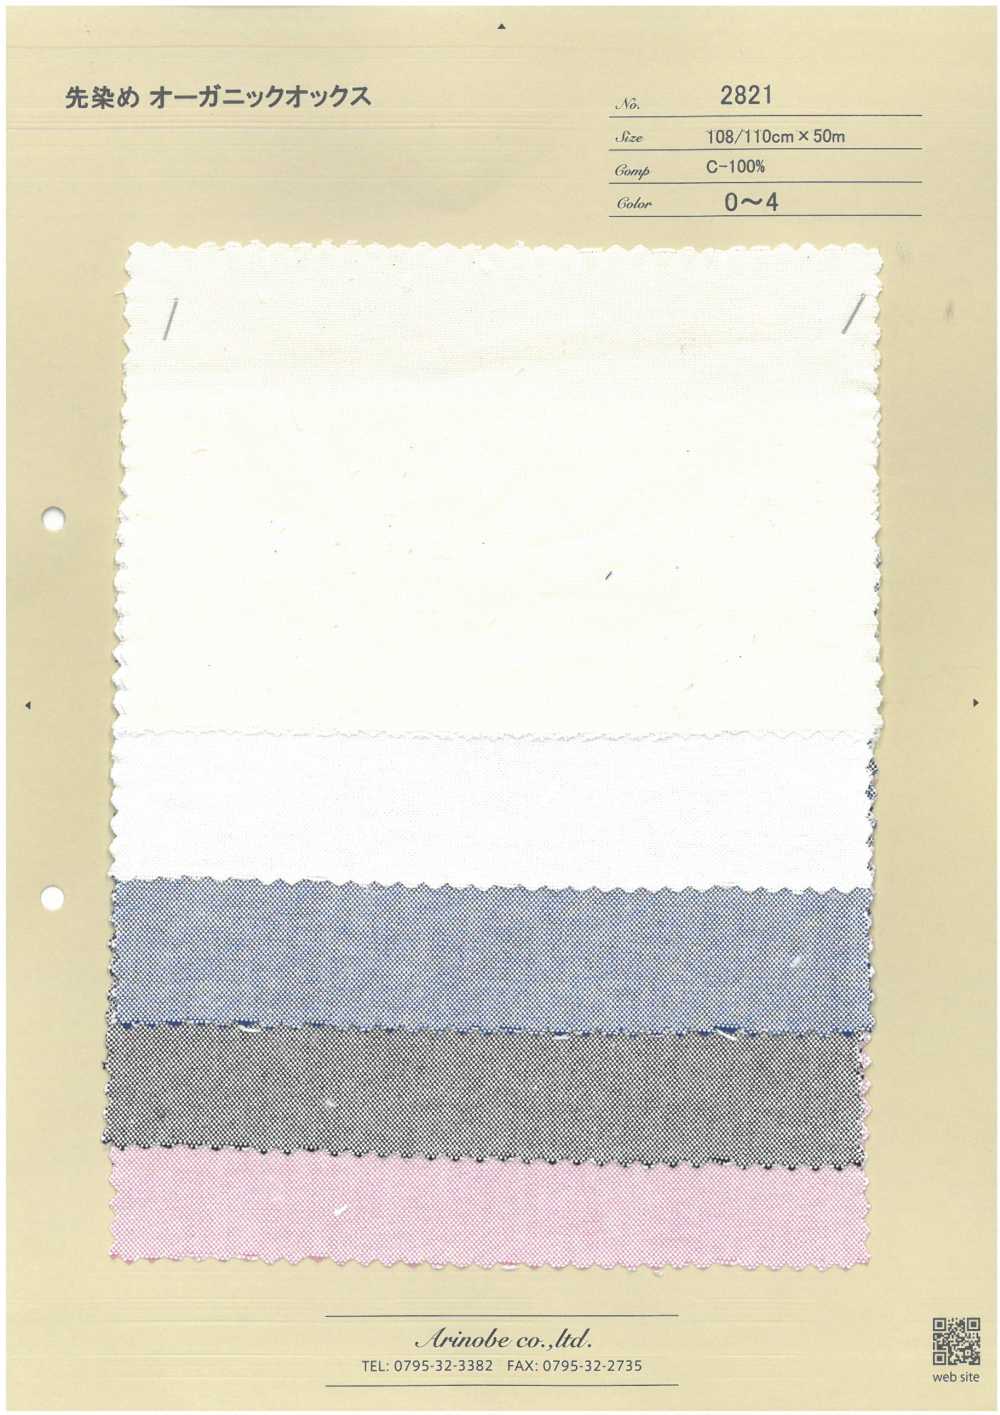 2821 Garngefärbtes Bio-Oxford[Textilgewebe] ARINOBE CO., LTD.